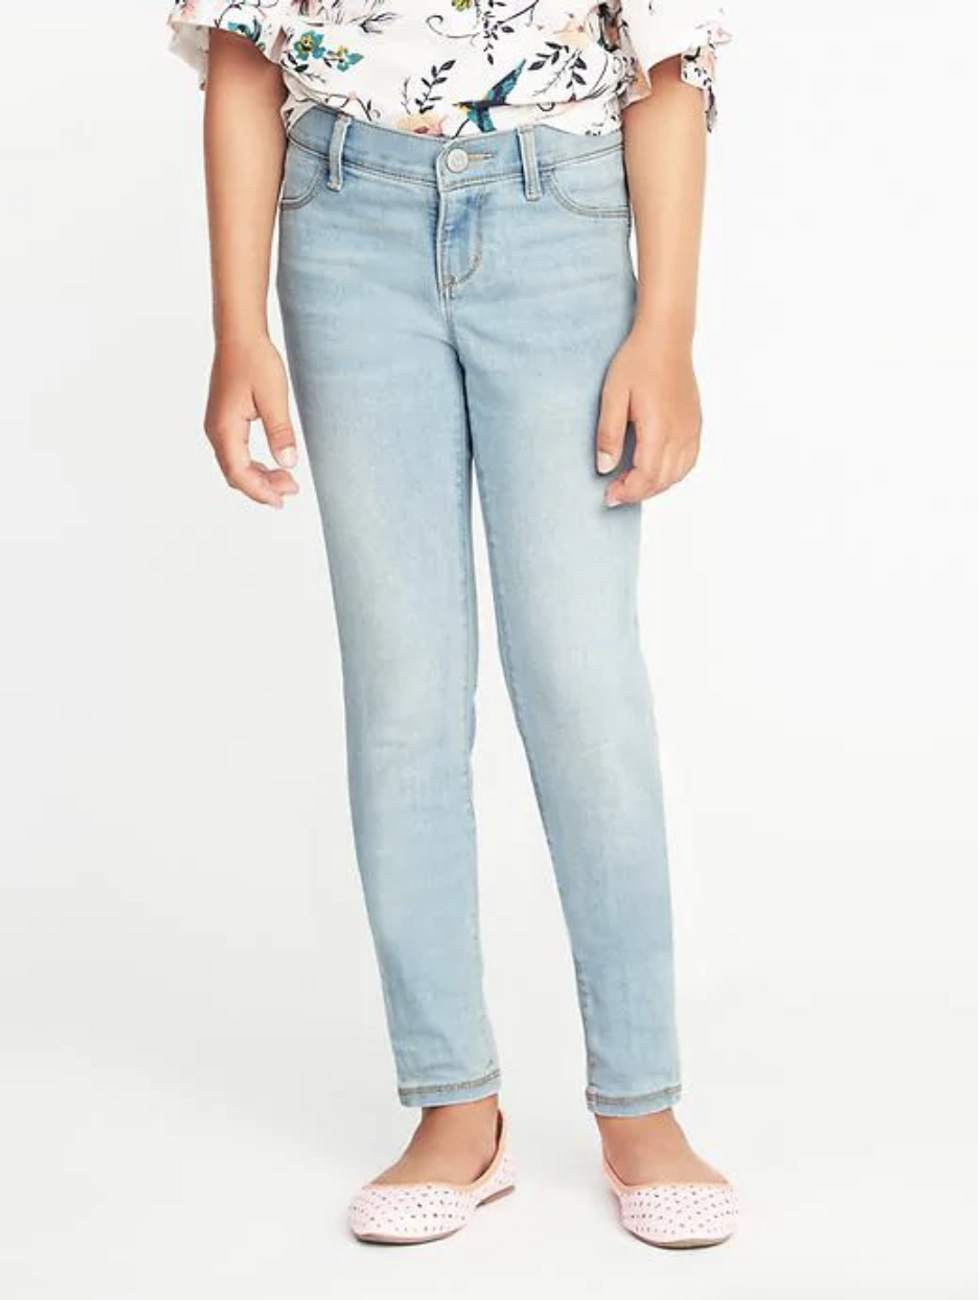 old navy rockstar jeans sale 6 Motherly